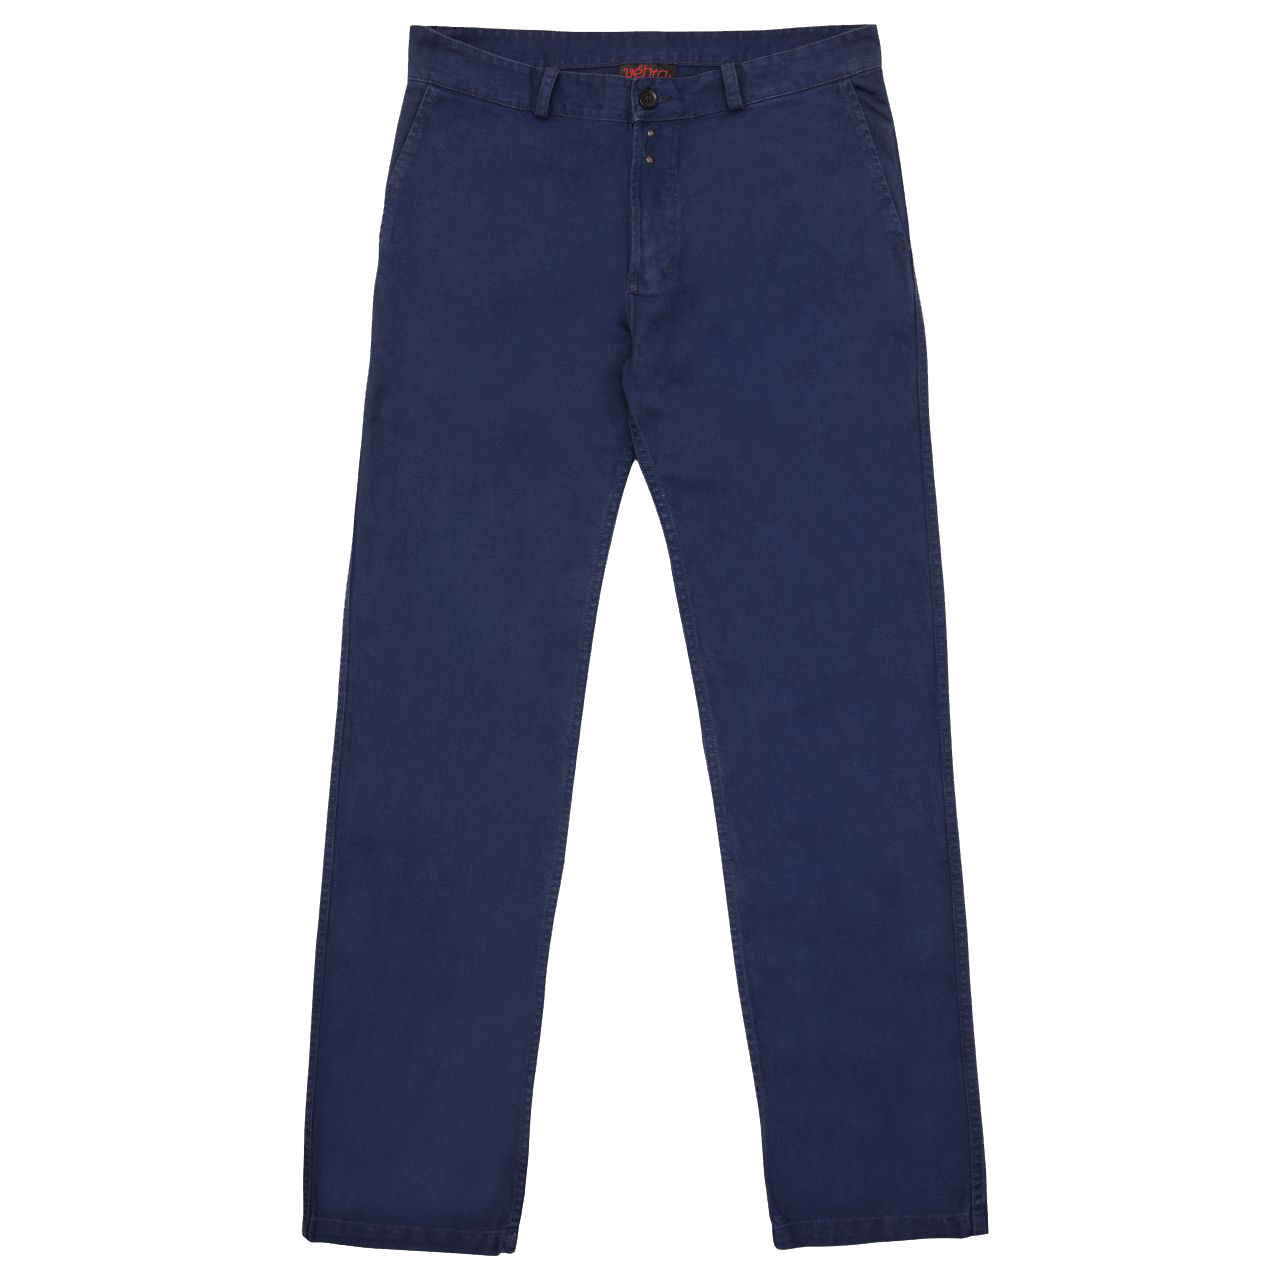 Jeans Denim Cobalt blue Waist Trousers - Trouser PNG Transparent Images ...